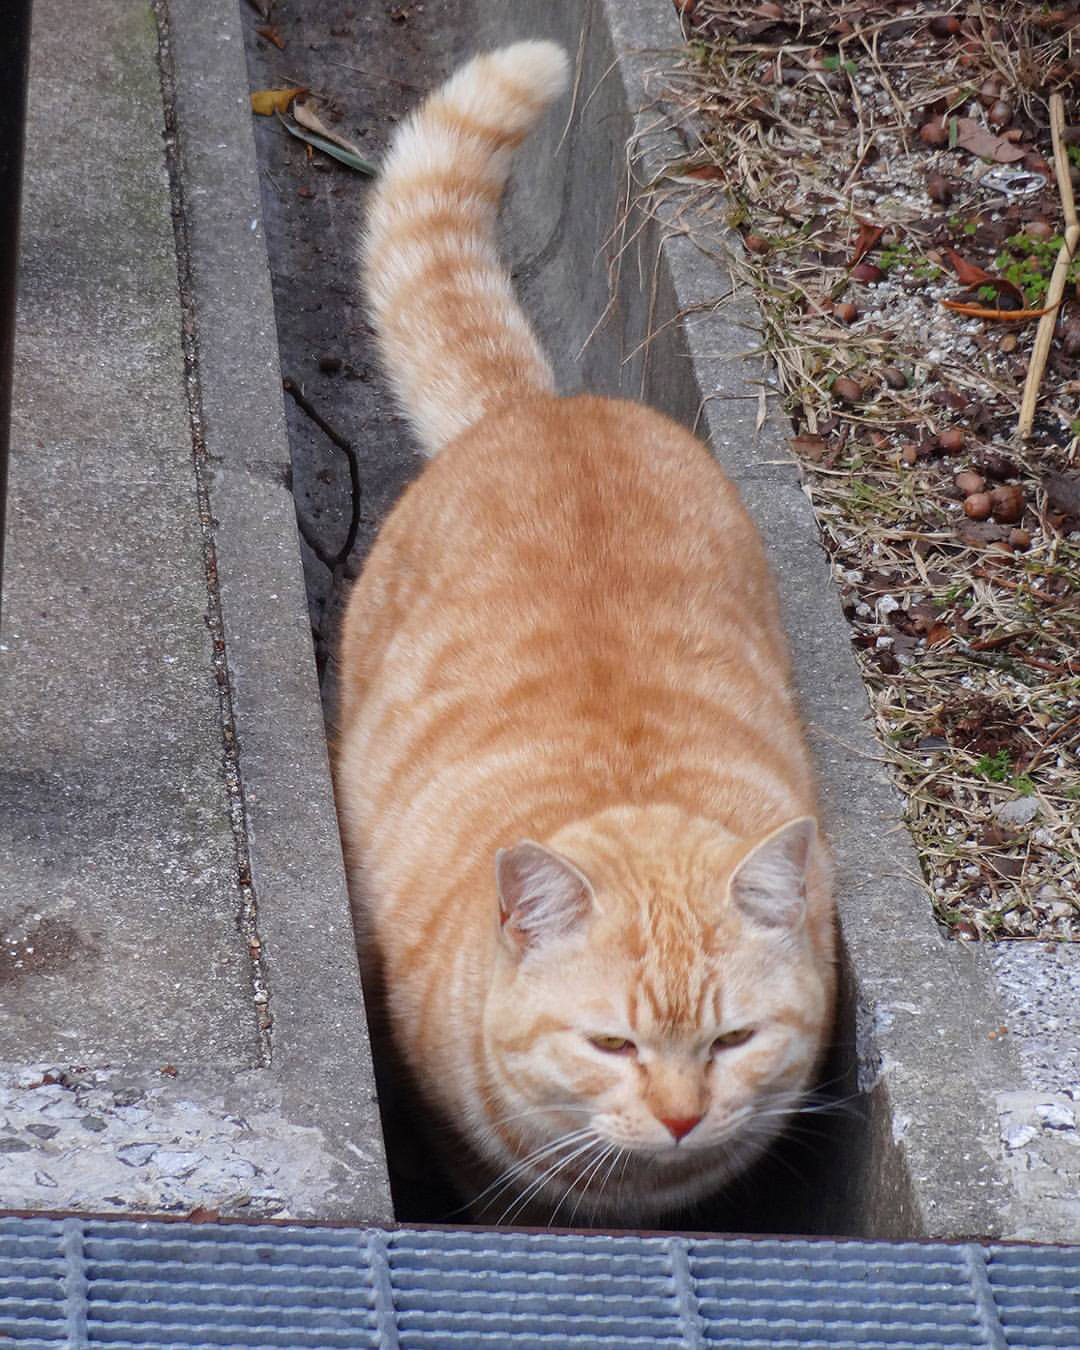 橘猫真是一个神奇的物种即使成了流浪猫也摆脱不了胖的命运